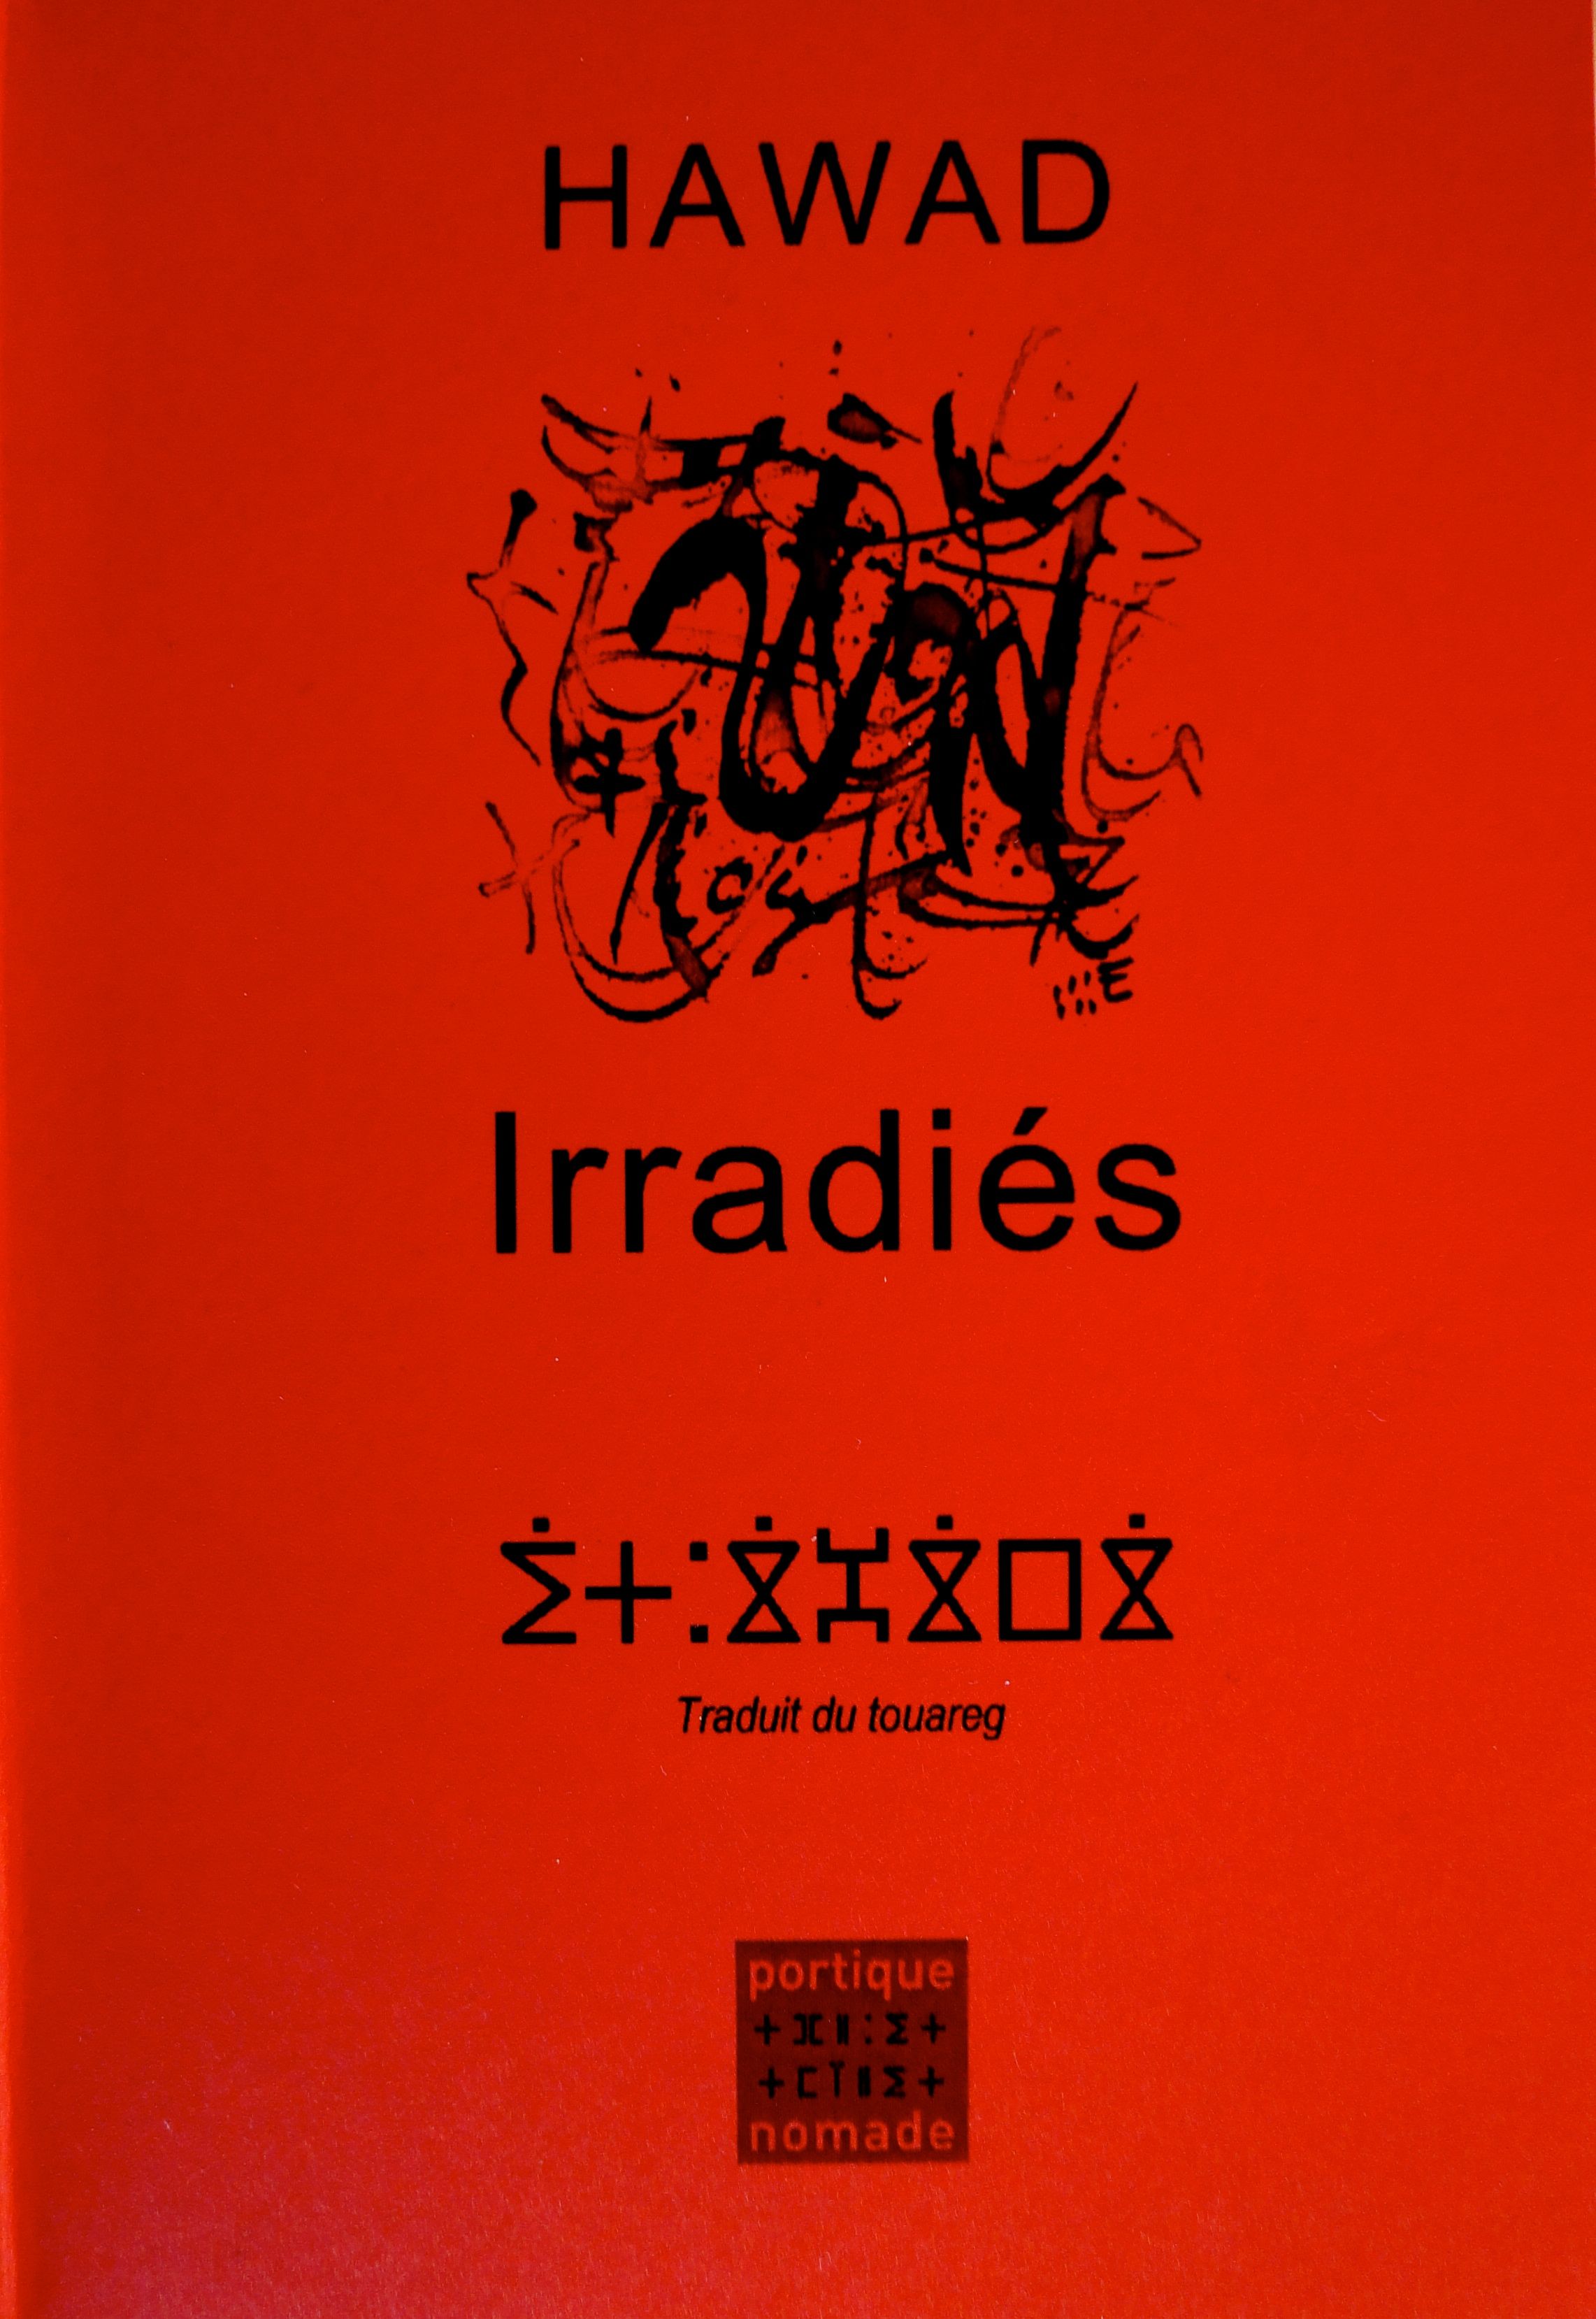 Hawad, Irradiés (traduit de la tamajaght), Portique Nomade, 2015